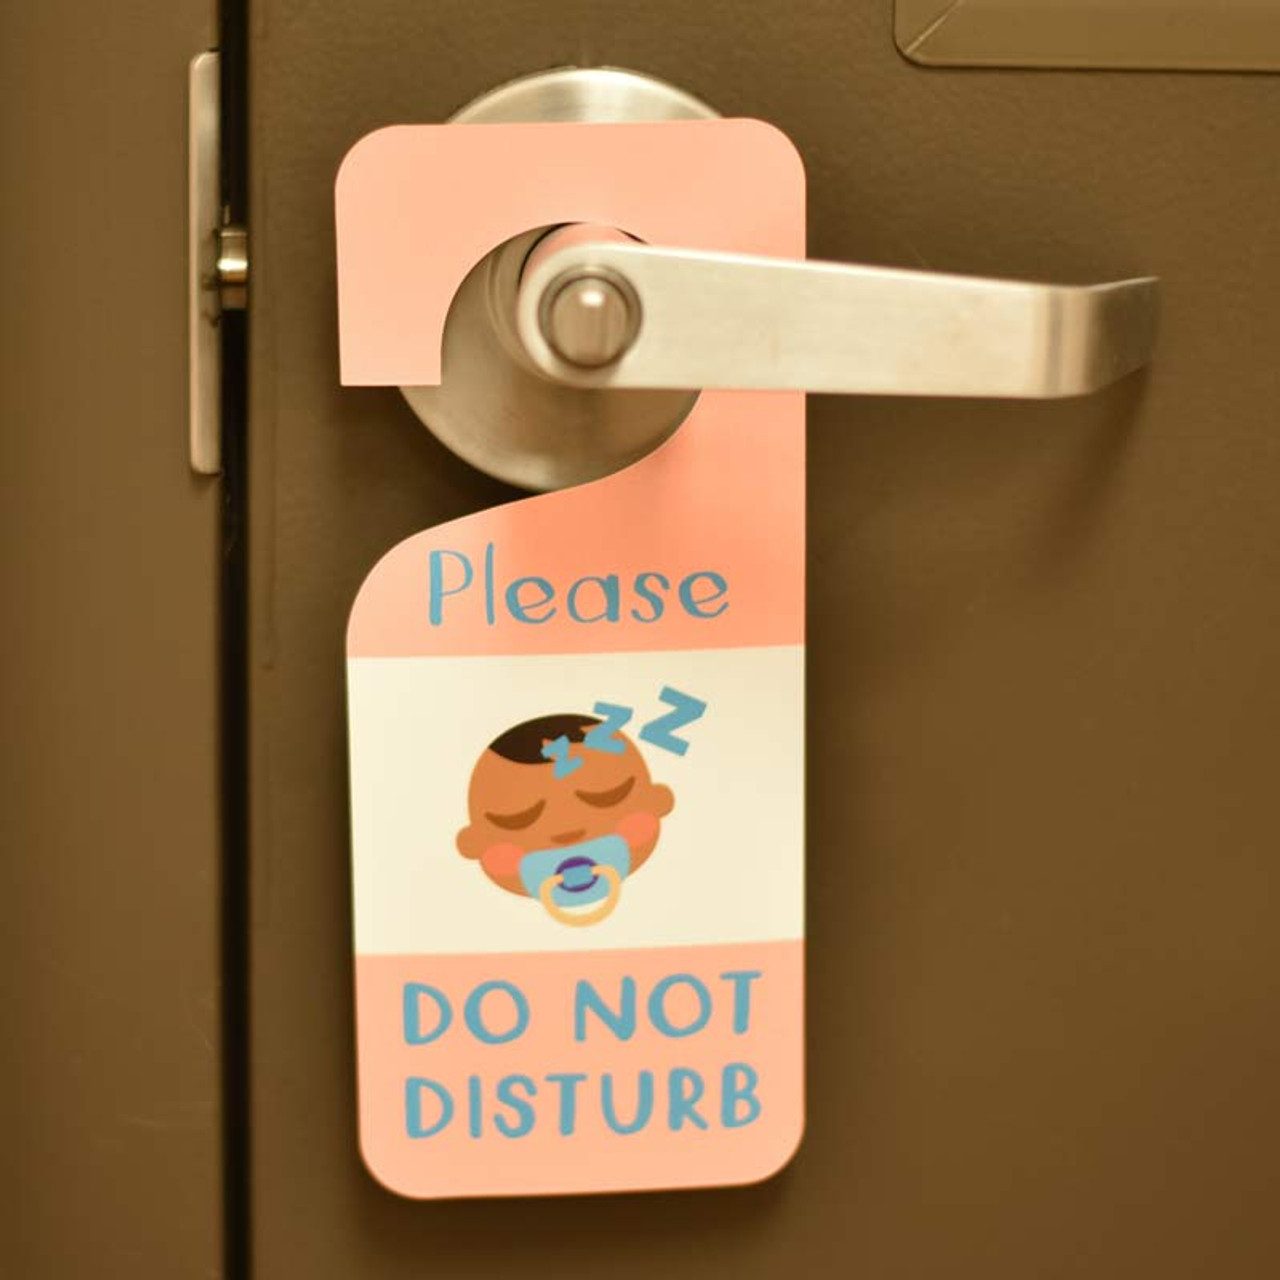 Door is LOCKED - Please Contact Receptionist - Floor Sign